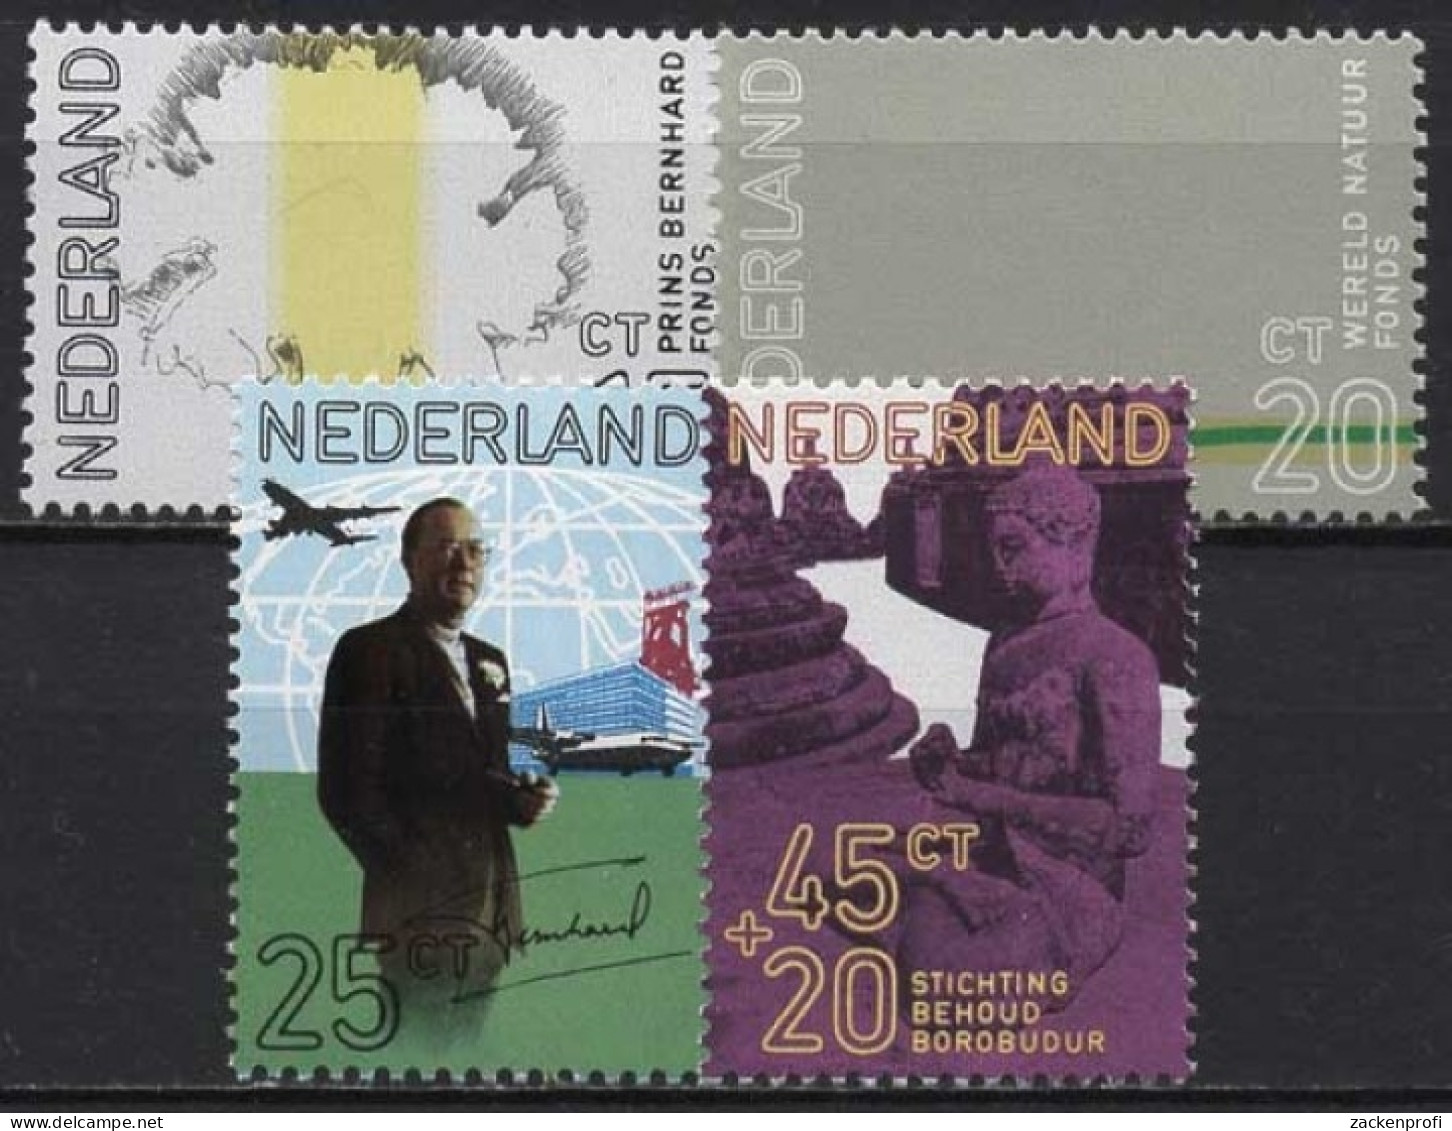 Niederlande 1971 60. Geburtstag Von Prinz Bernhard 965/68 Postfrisch - Unused Stamps